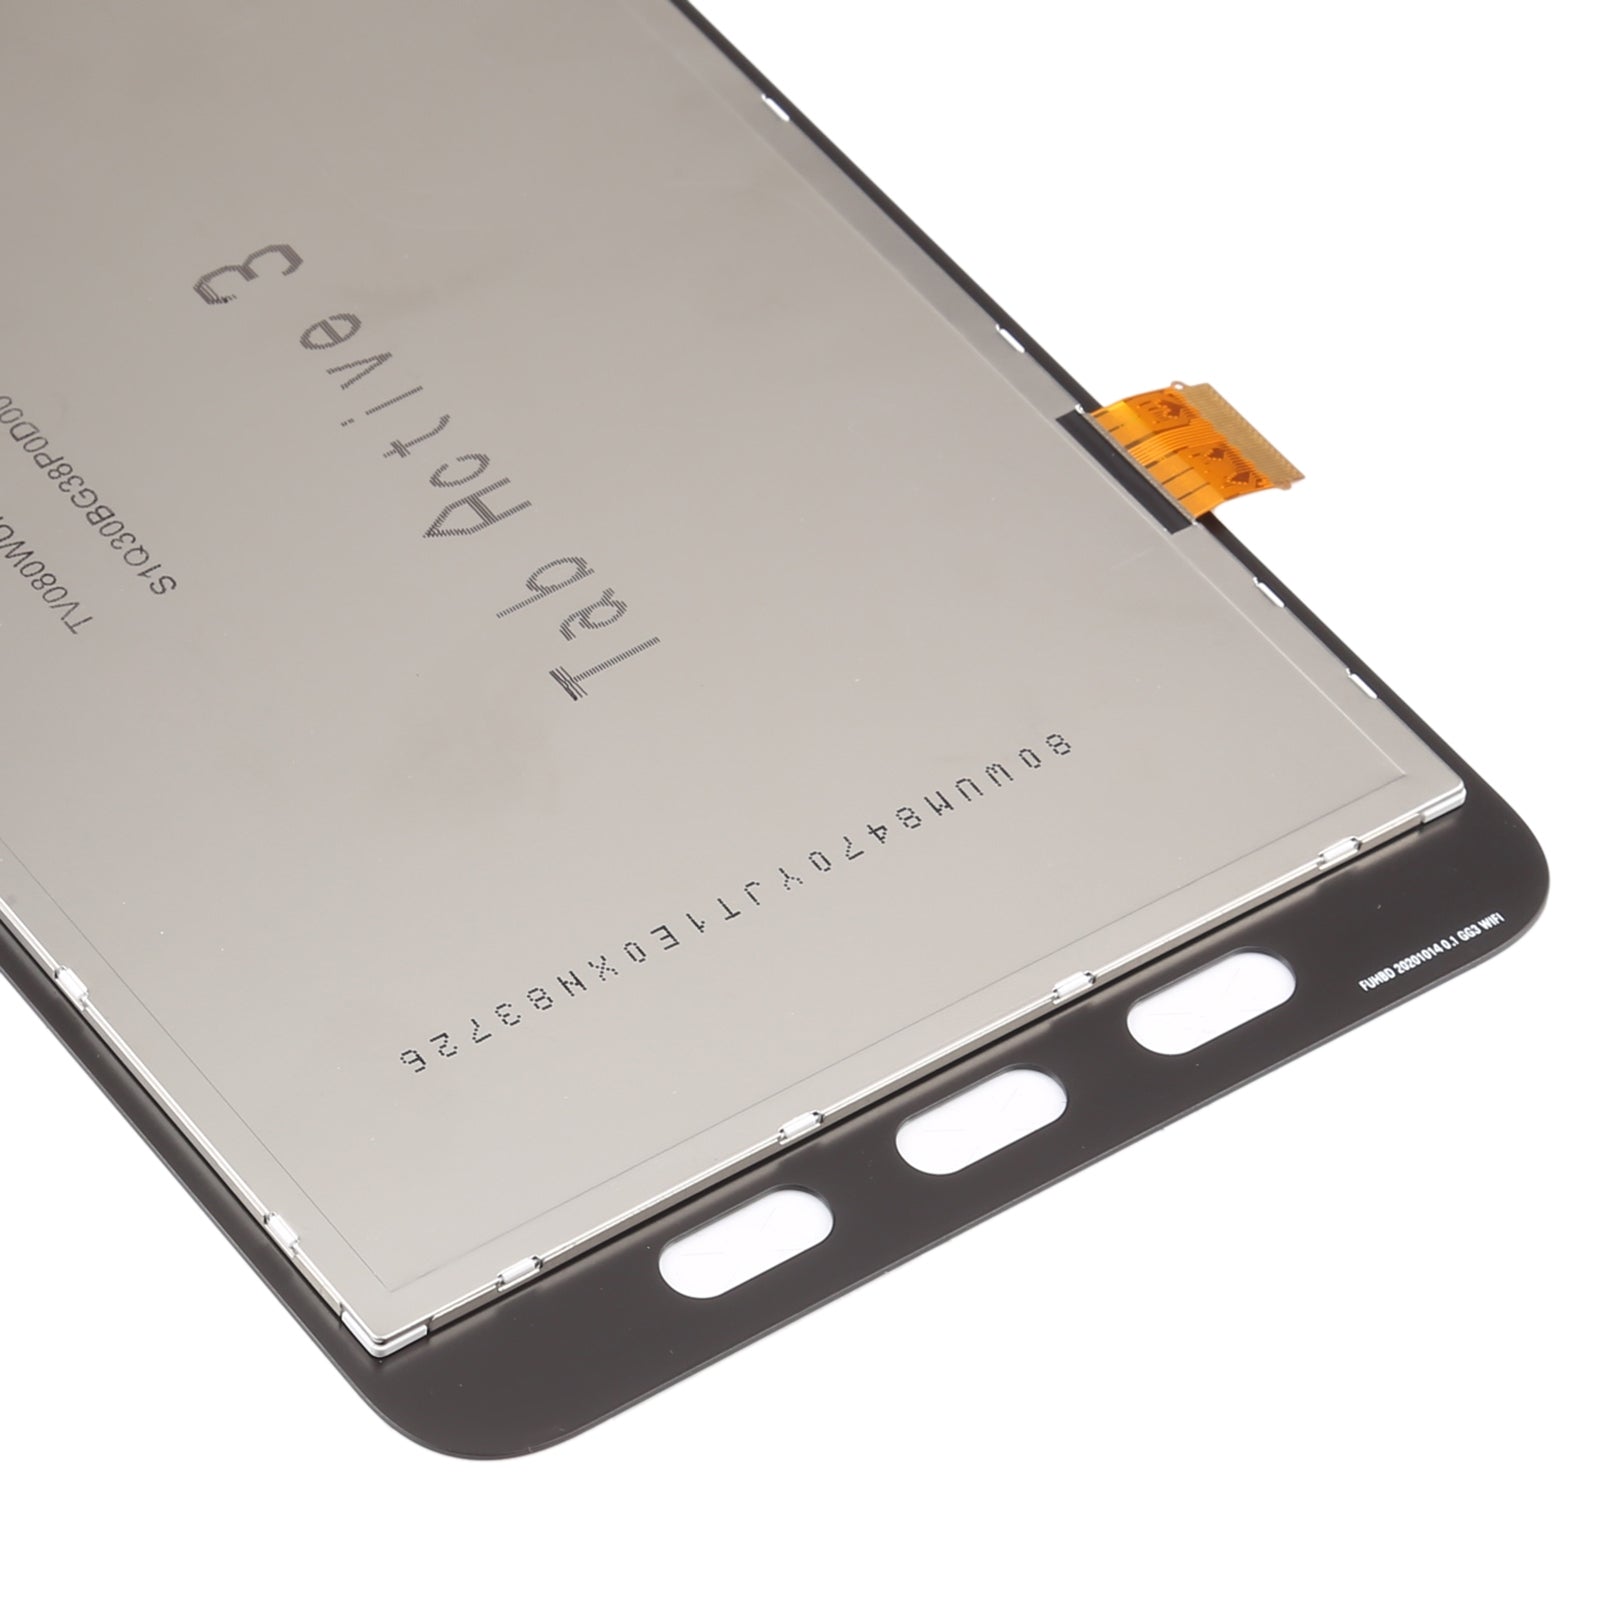 Pantalla LCD + Tactil Samsung Galaxy Tab Active 3 T570 (Versión WiFi) Negro